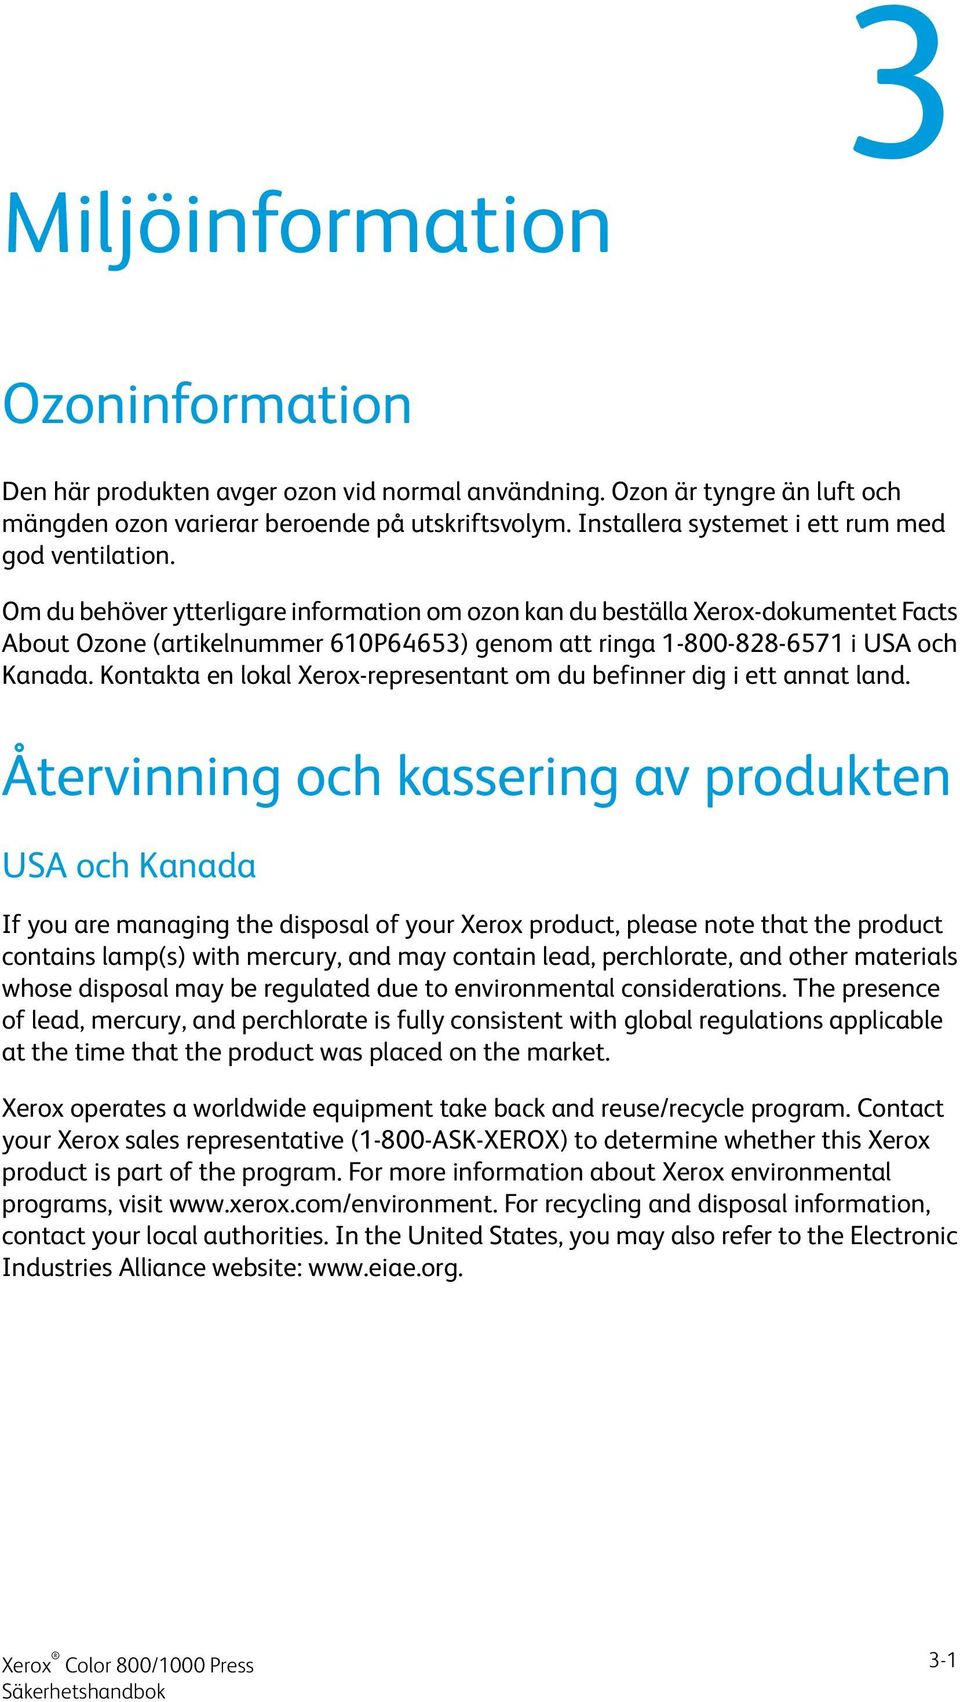 Om du behöver ytterligare information om ozon kan du beställa Xerox-dokumentet Facts About Ozone (artikelnummer 610P64653) genom att ringa 1-800-828-6571 i USA och Kanada.